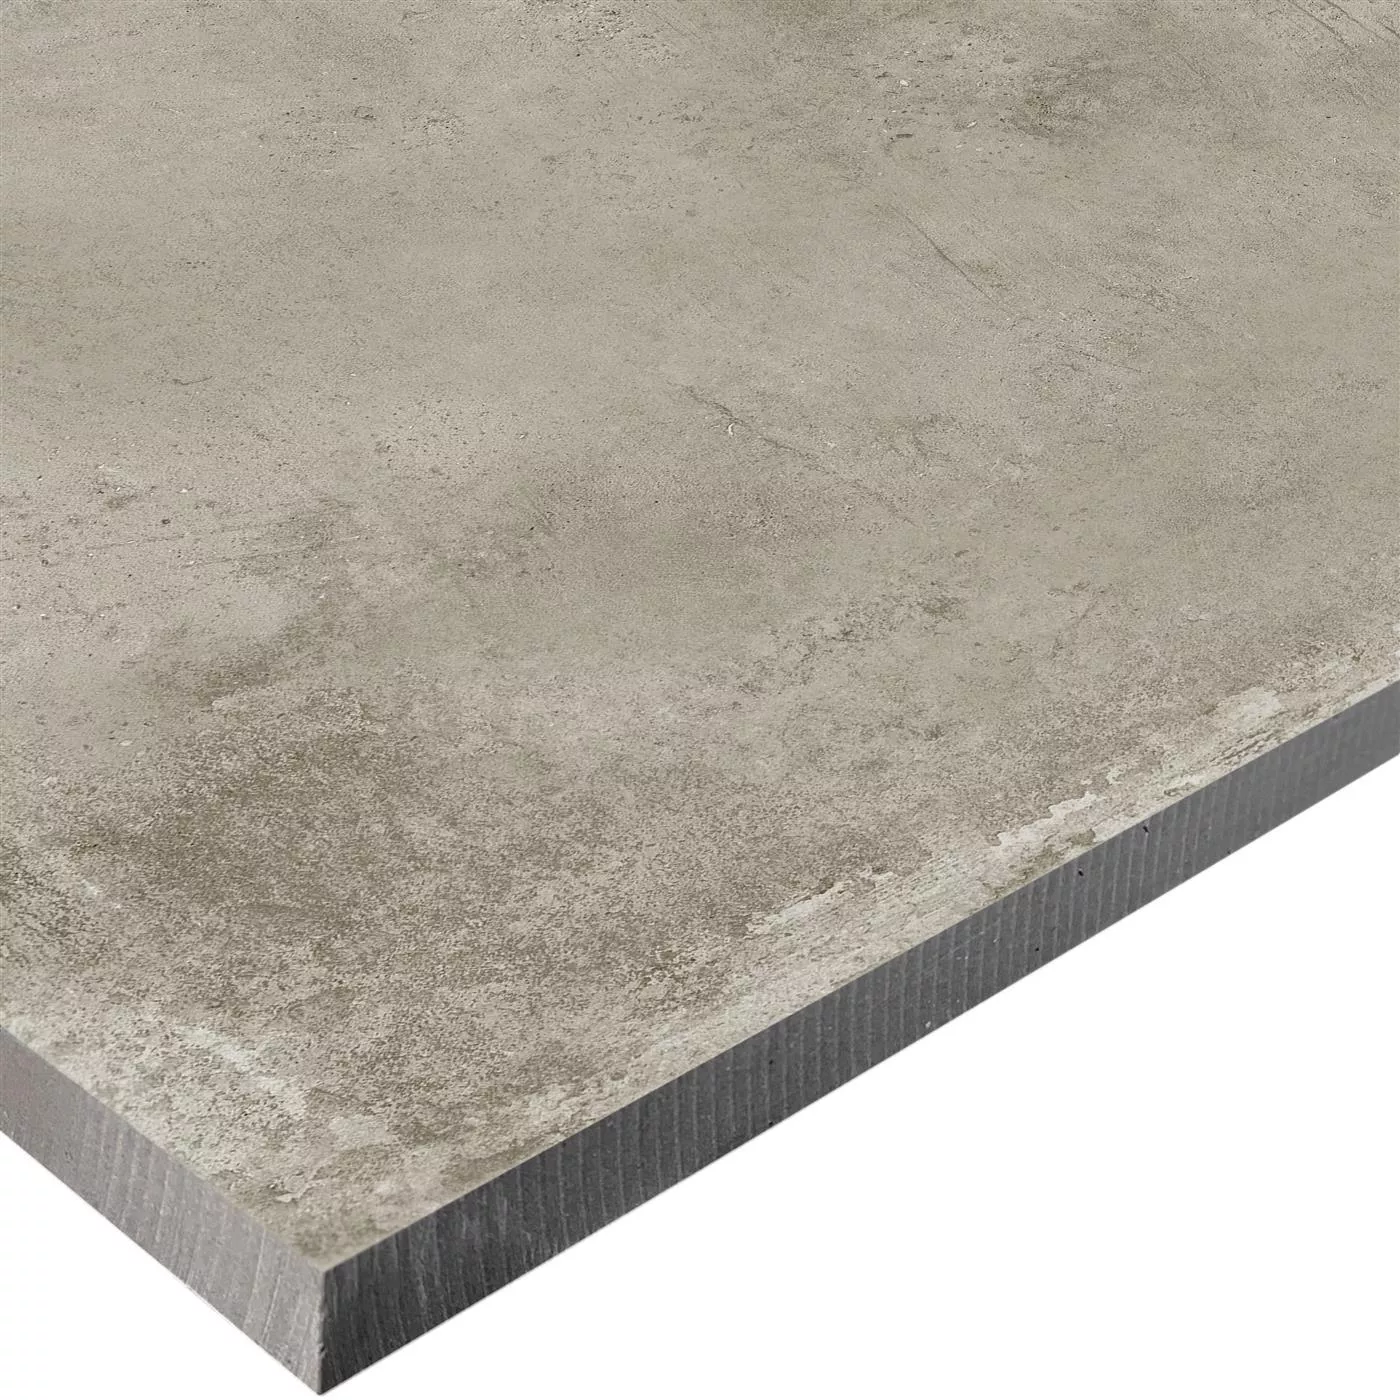 Sample Terrace Tiles Cement Optic Berlin Beige 60x60cm